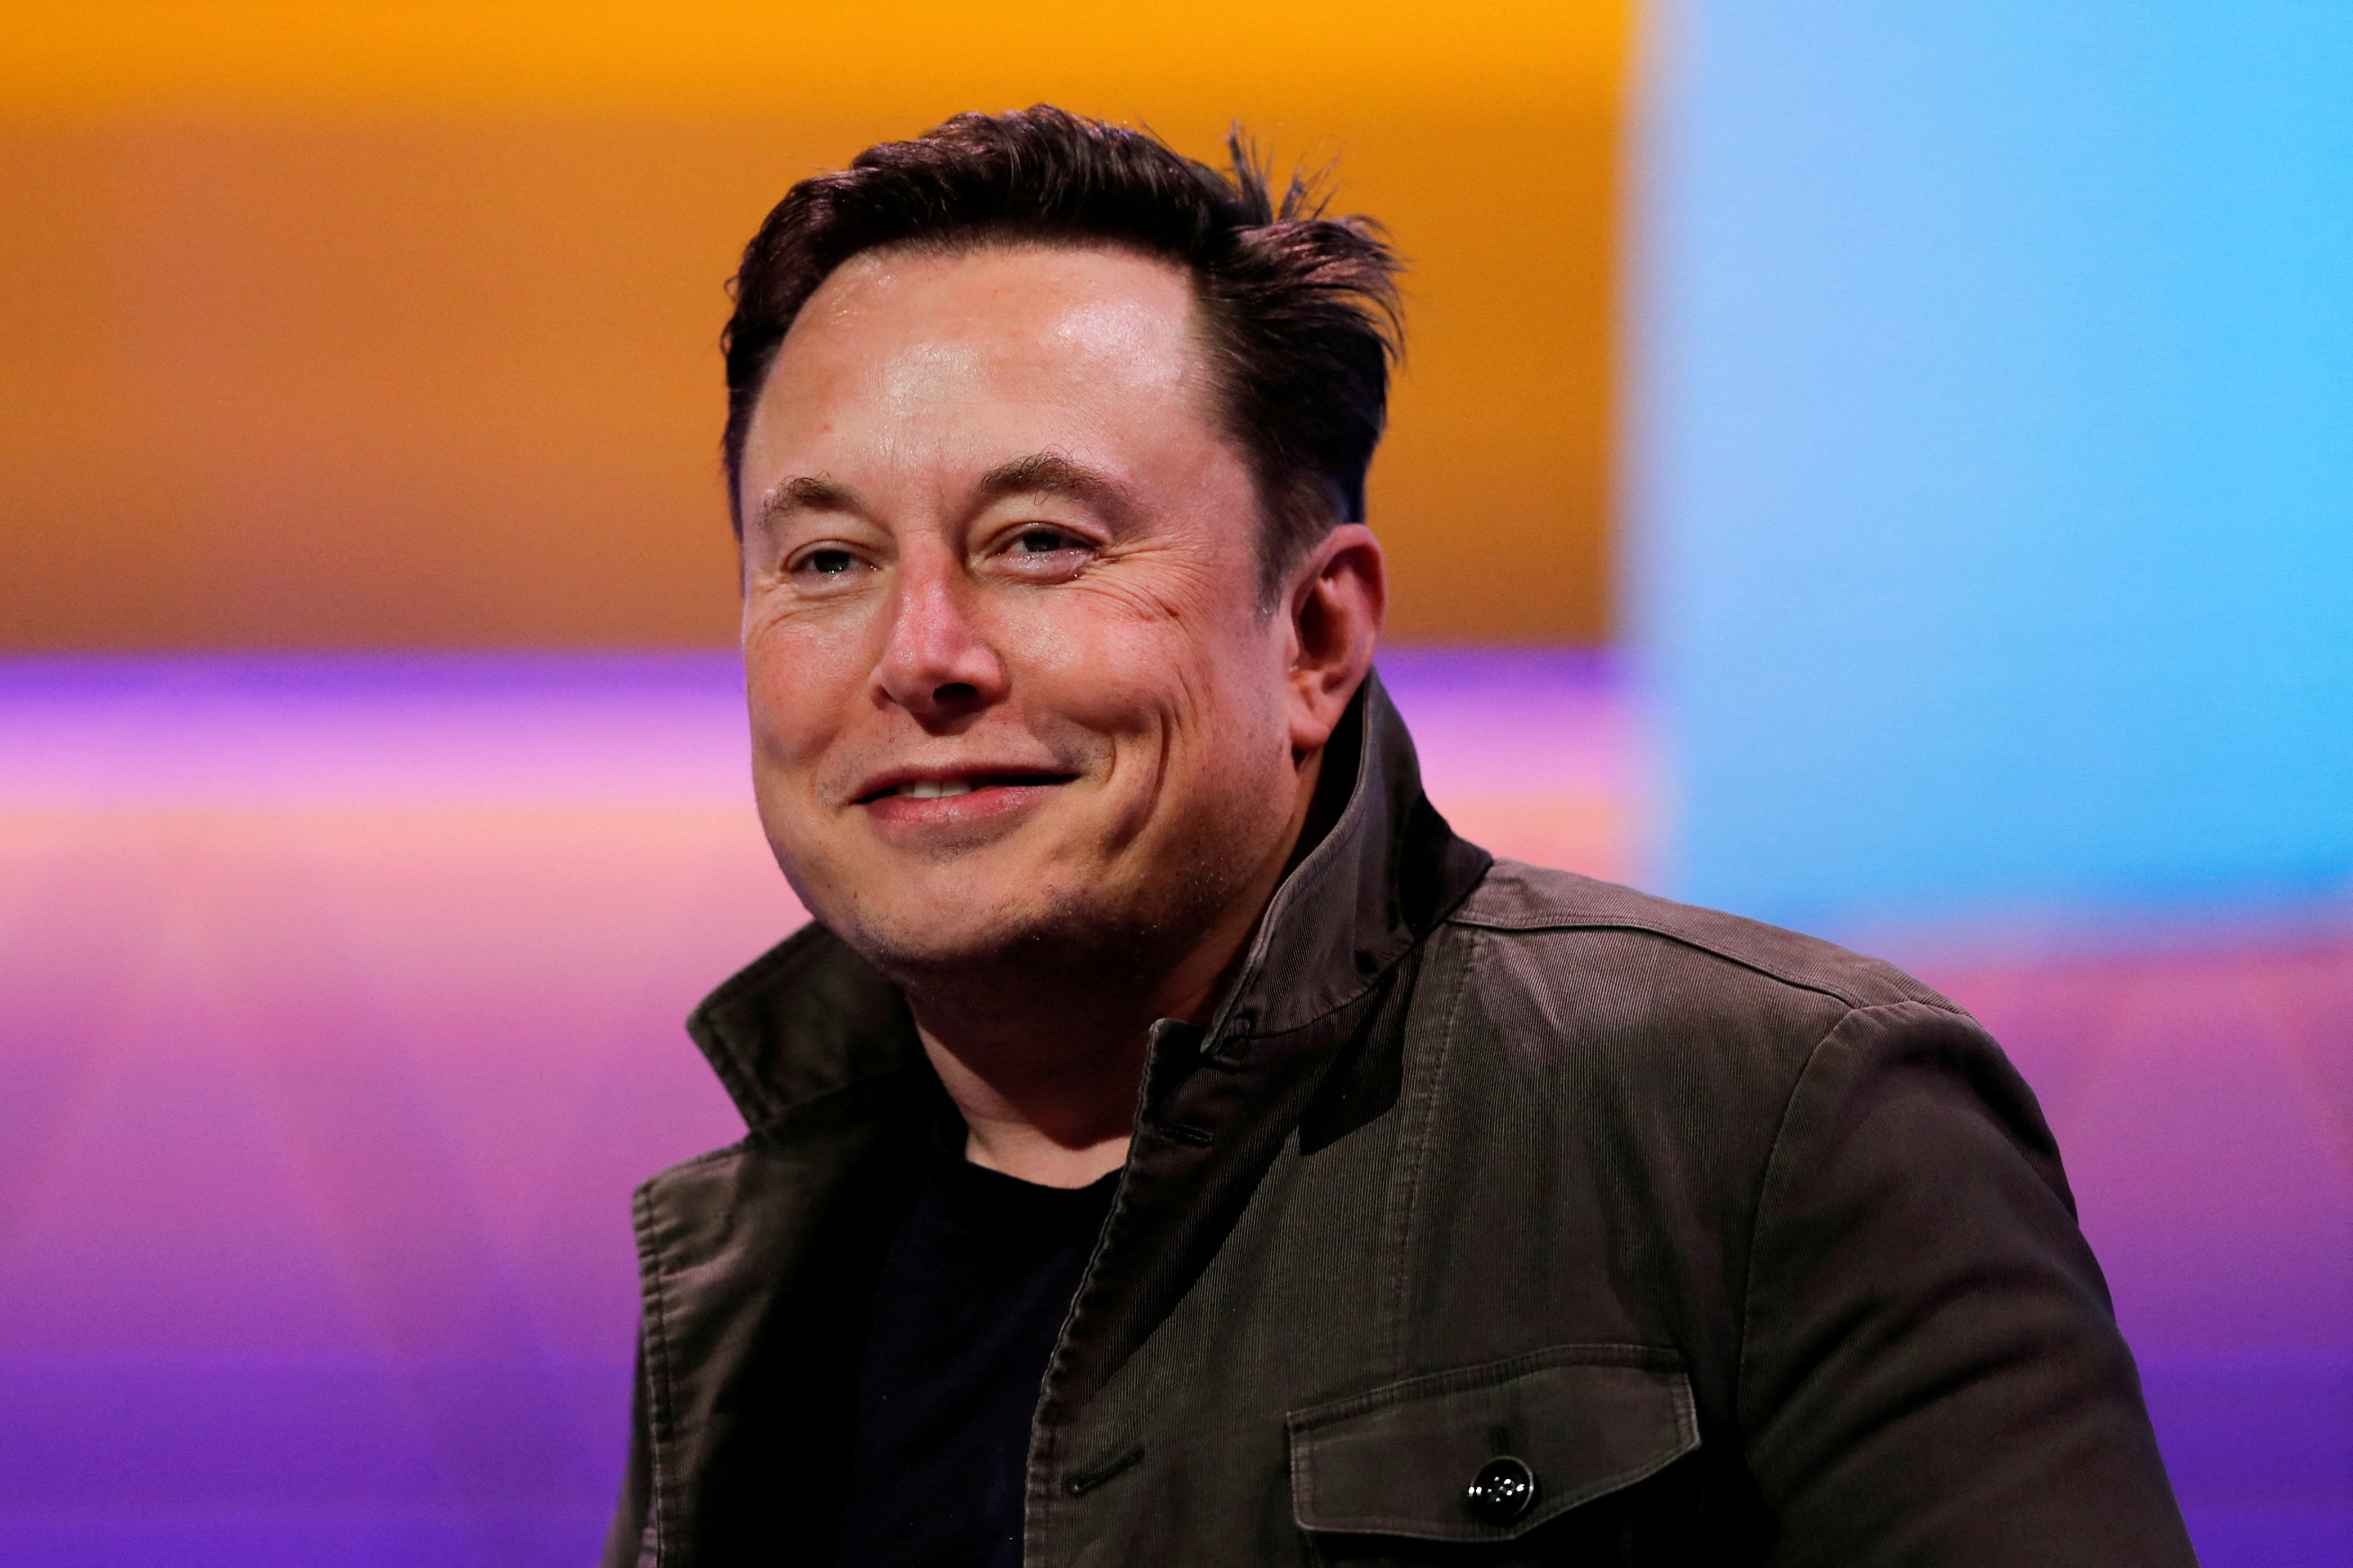 Elon Musk sells $1 million worth of new perfume, 'Burnt Hair' | Reuters